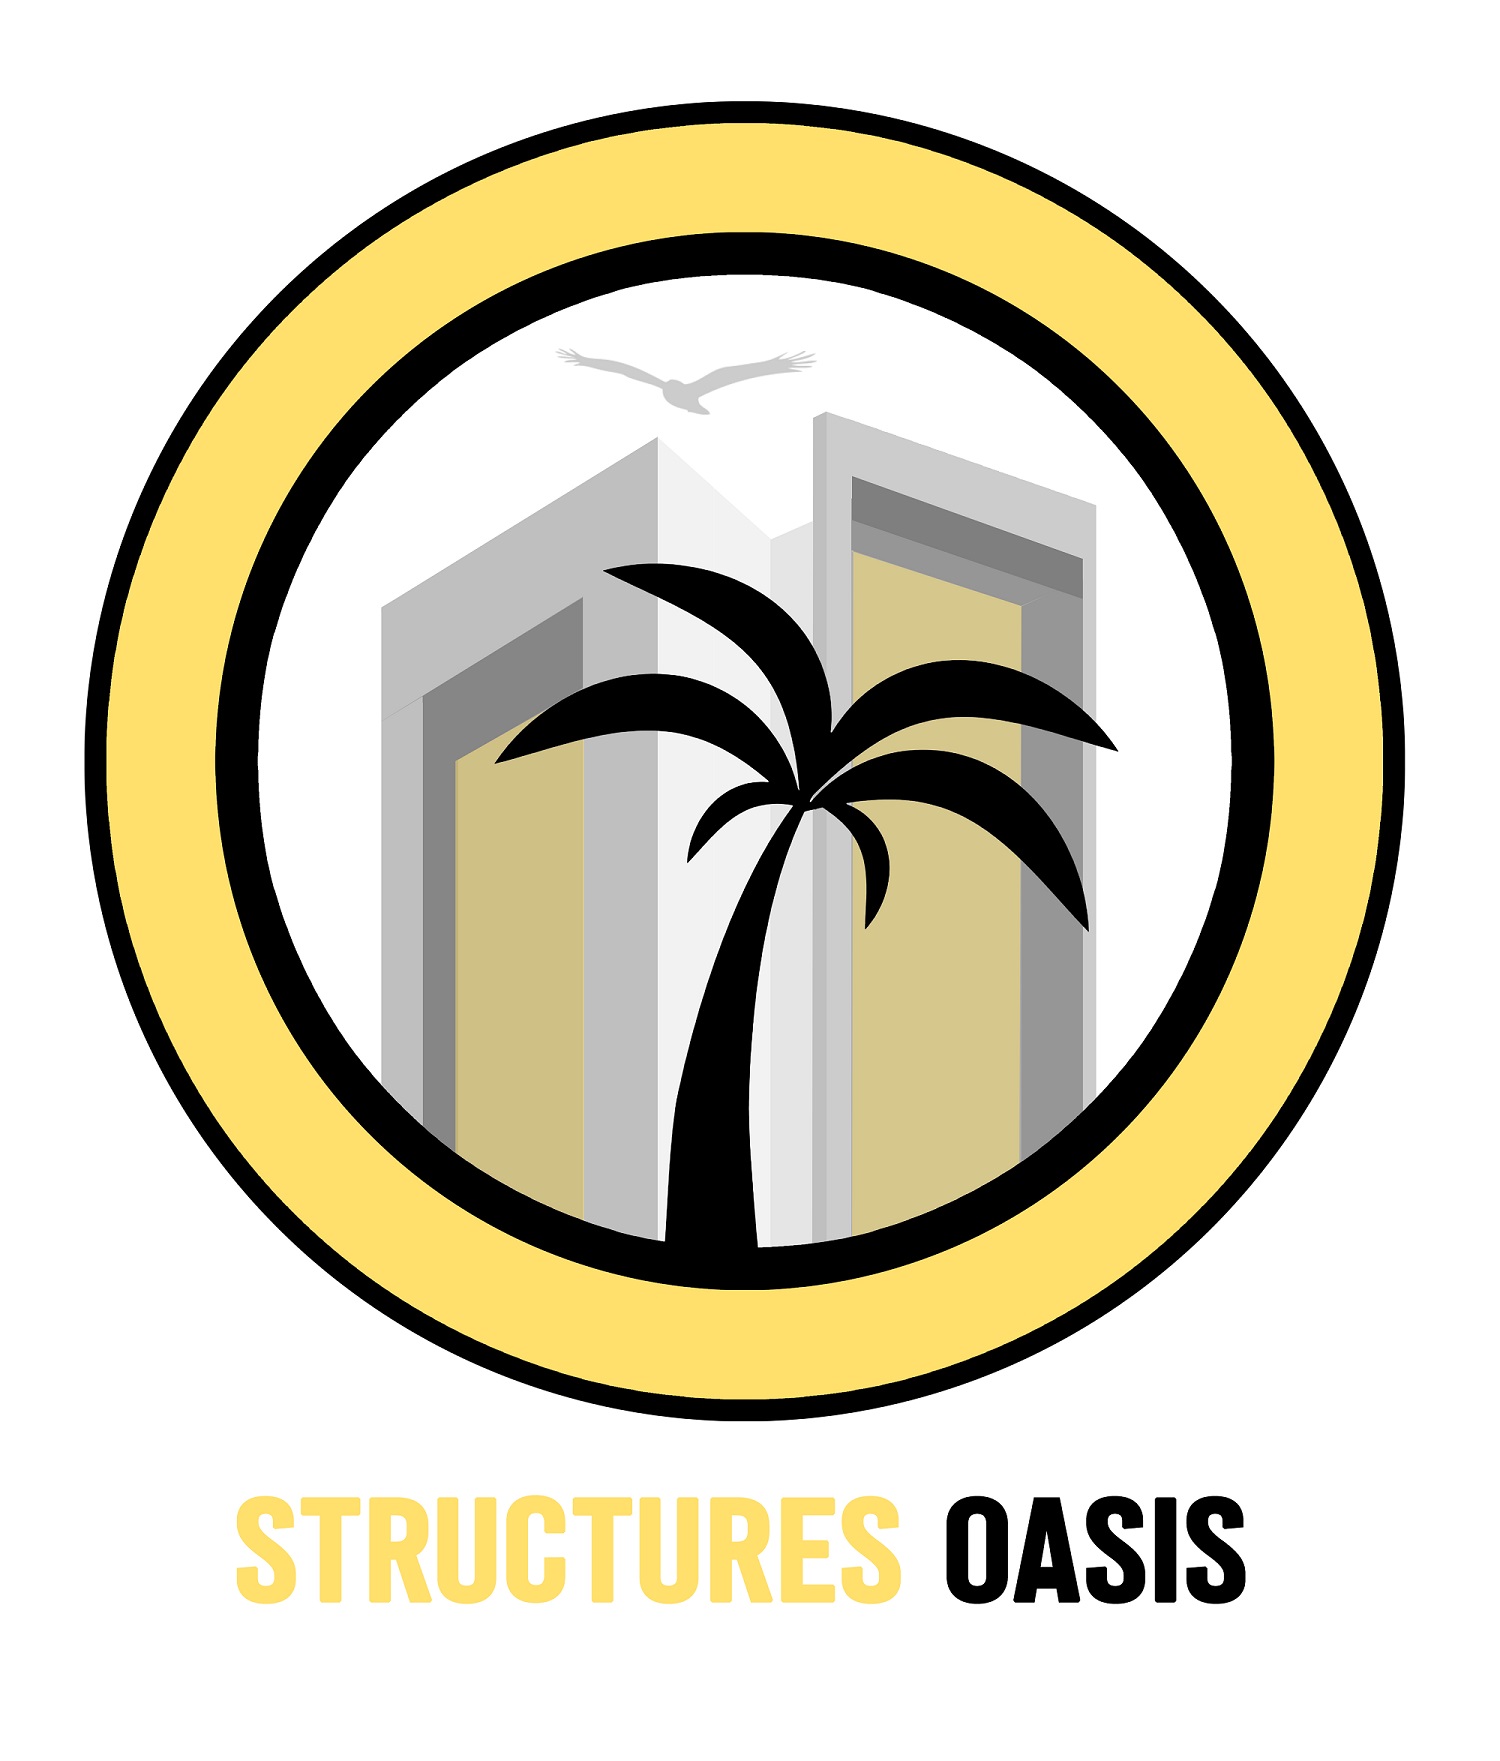 Distribuidor de Dlubal Structures Oasis FZCO